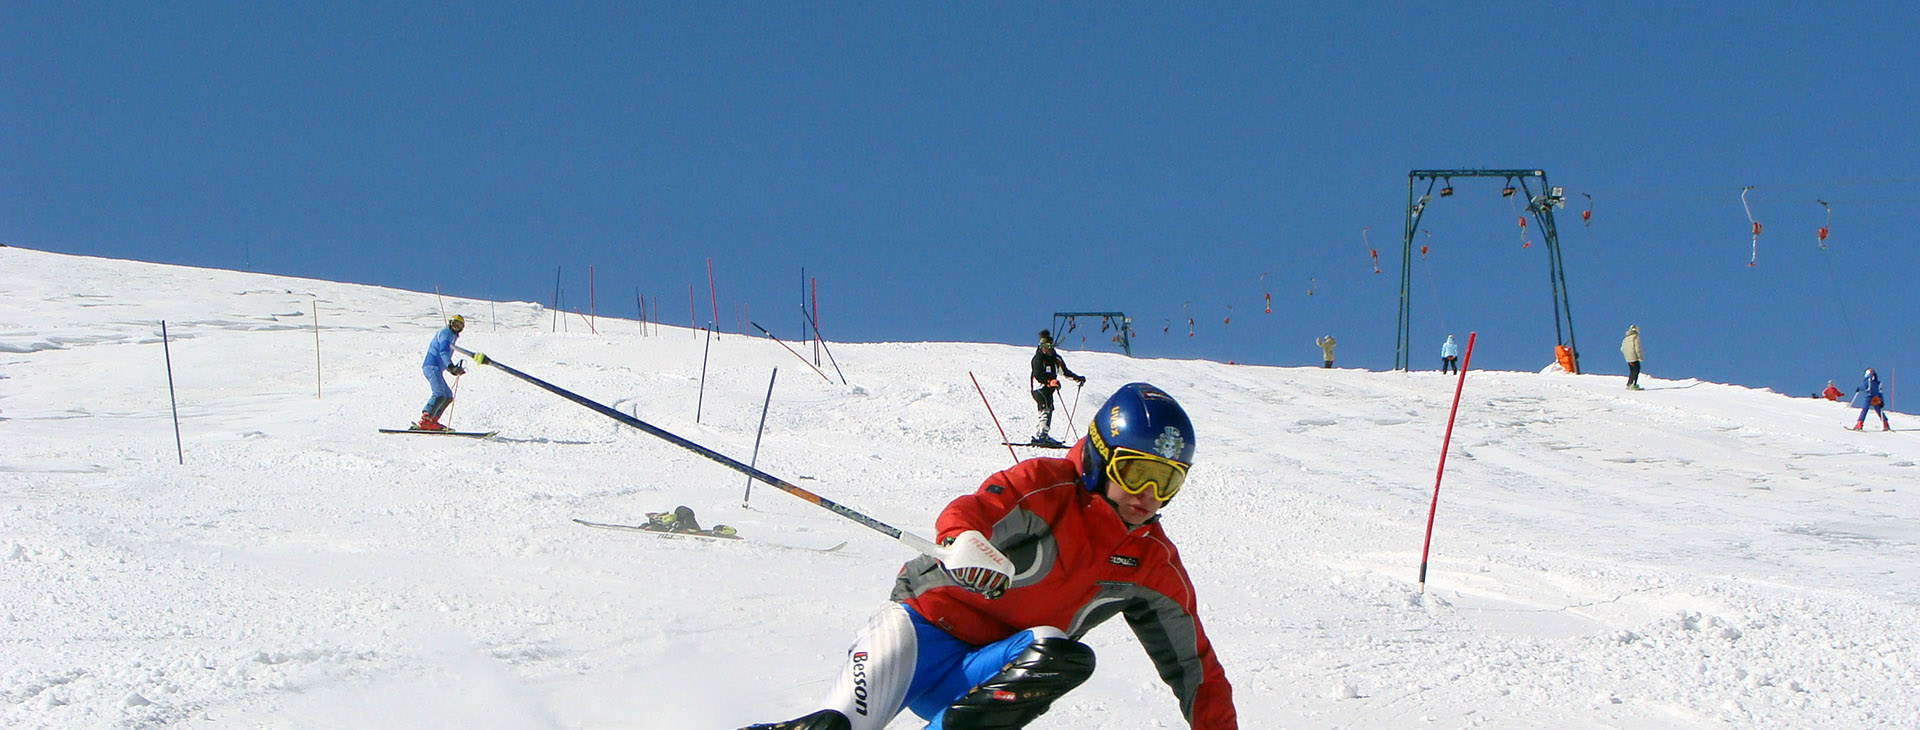 Kaimaktsalan ski center, Pella